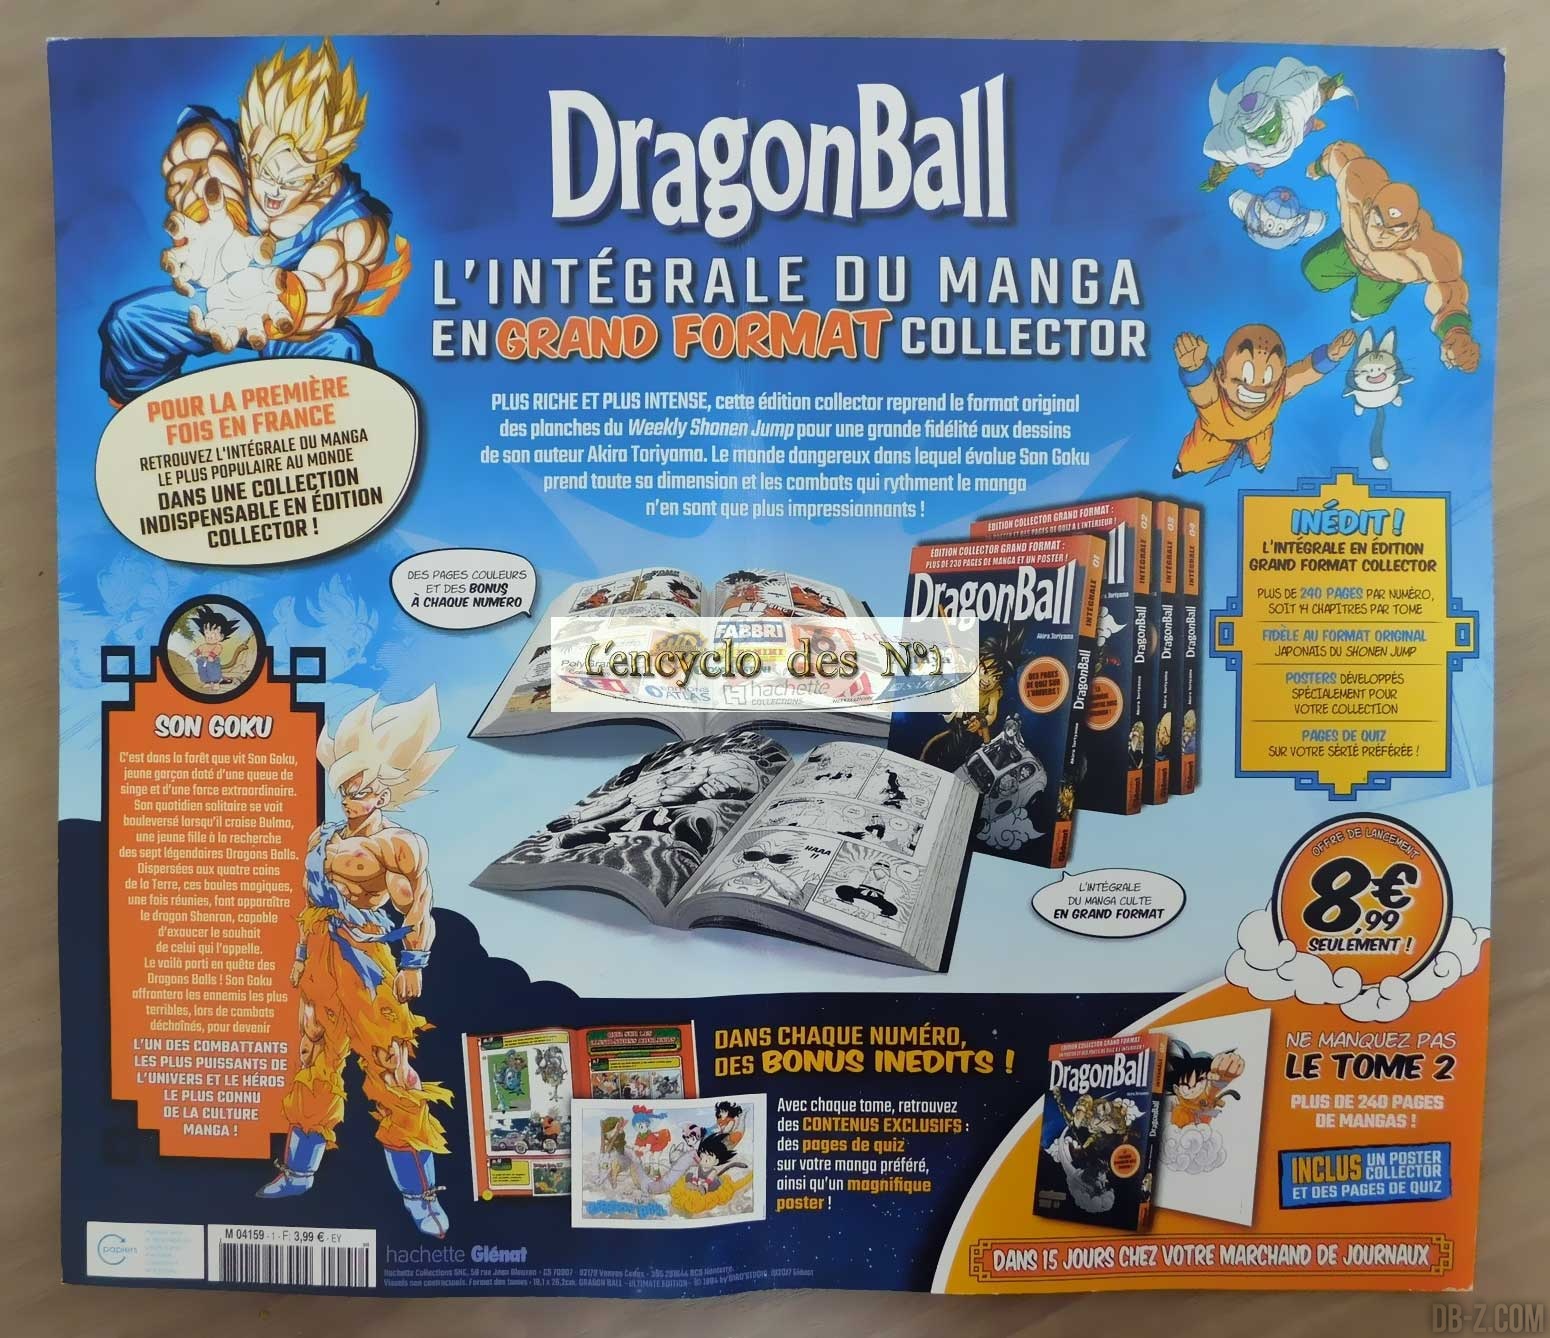 Manga Dragon Ball : L'INTÉGRALE en GRAND FORMAT pour bientôt en France ?